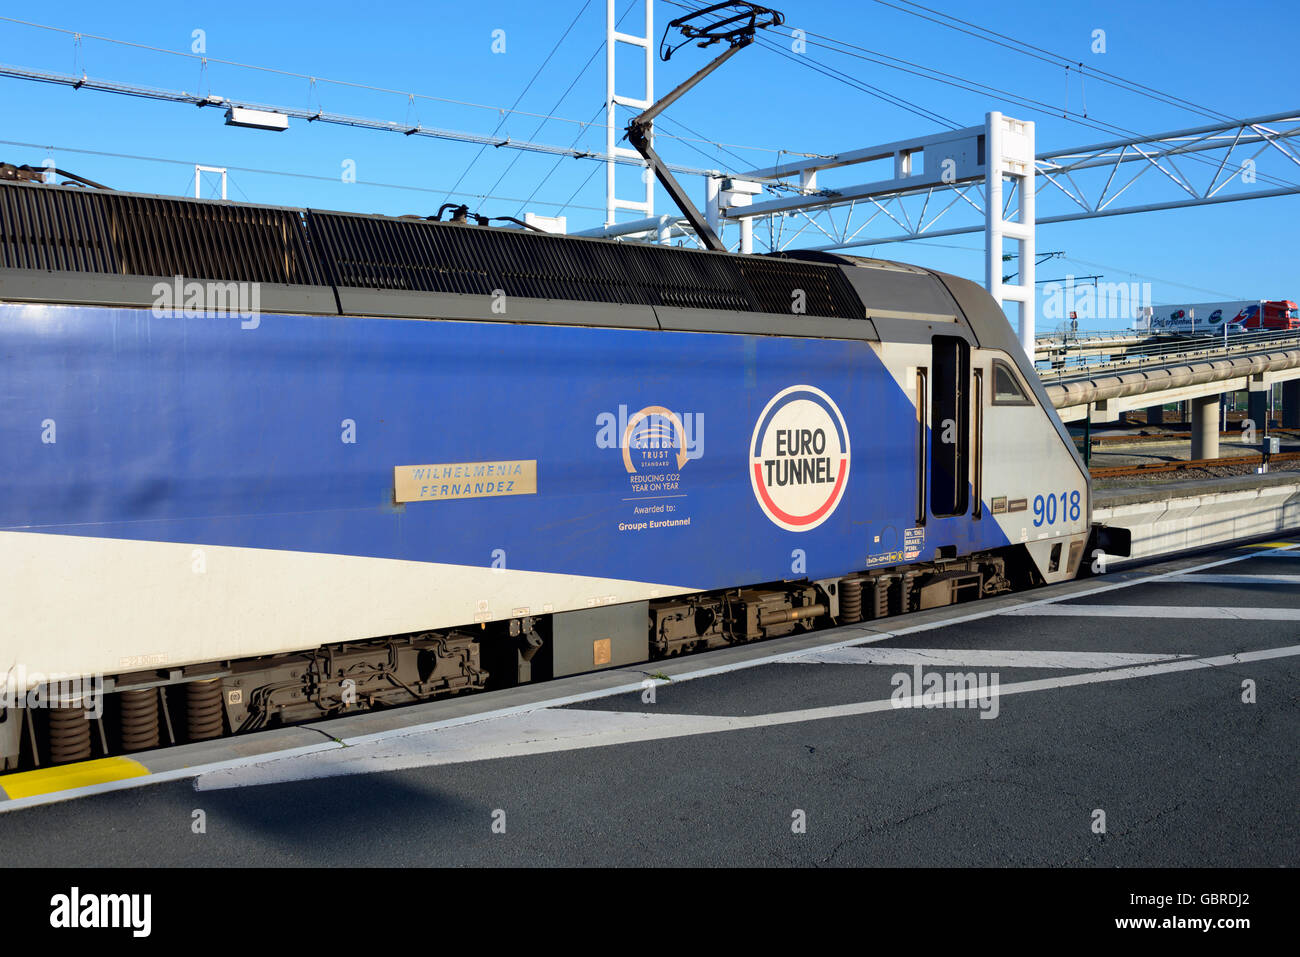 Train, Eurotunnel, Calais, France Stock Photo